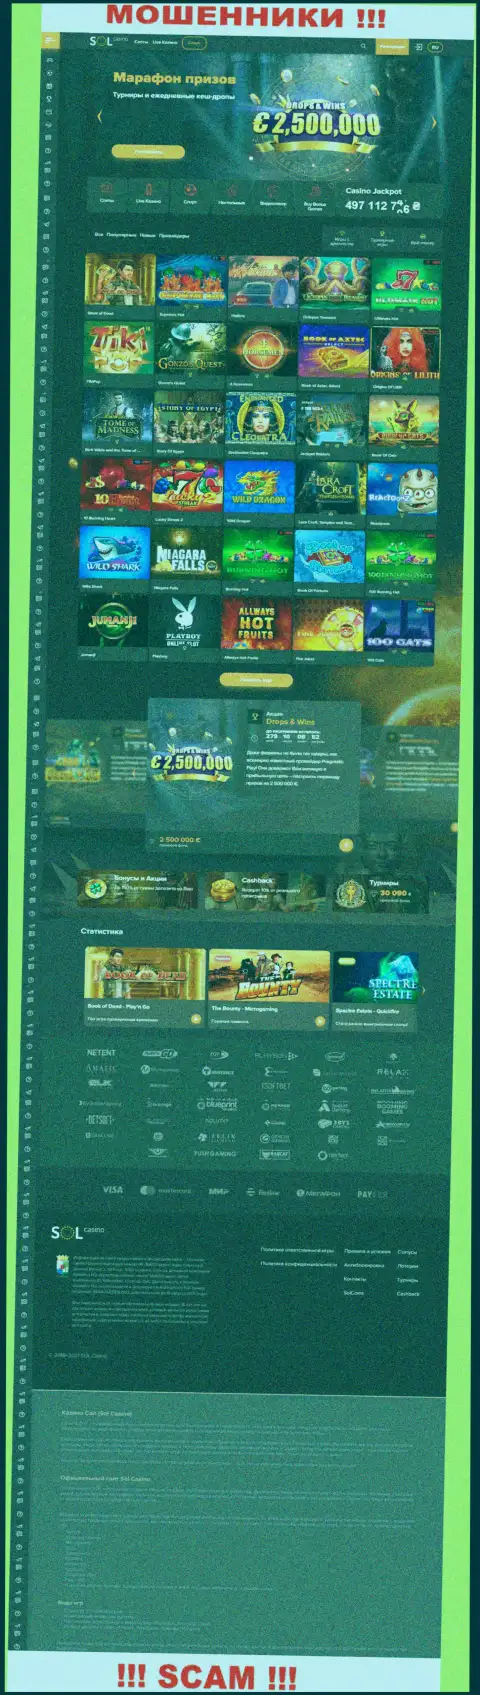 Главная страница официального веб-ресурса мошенников Sol Casino